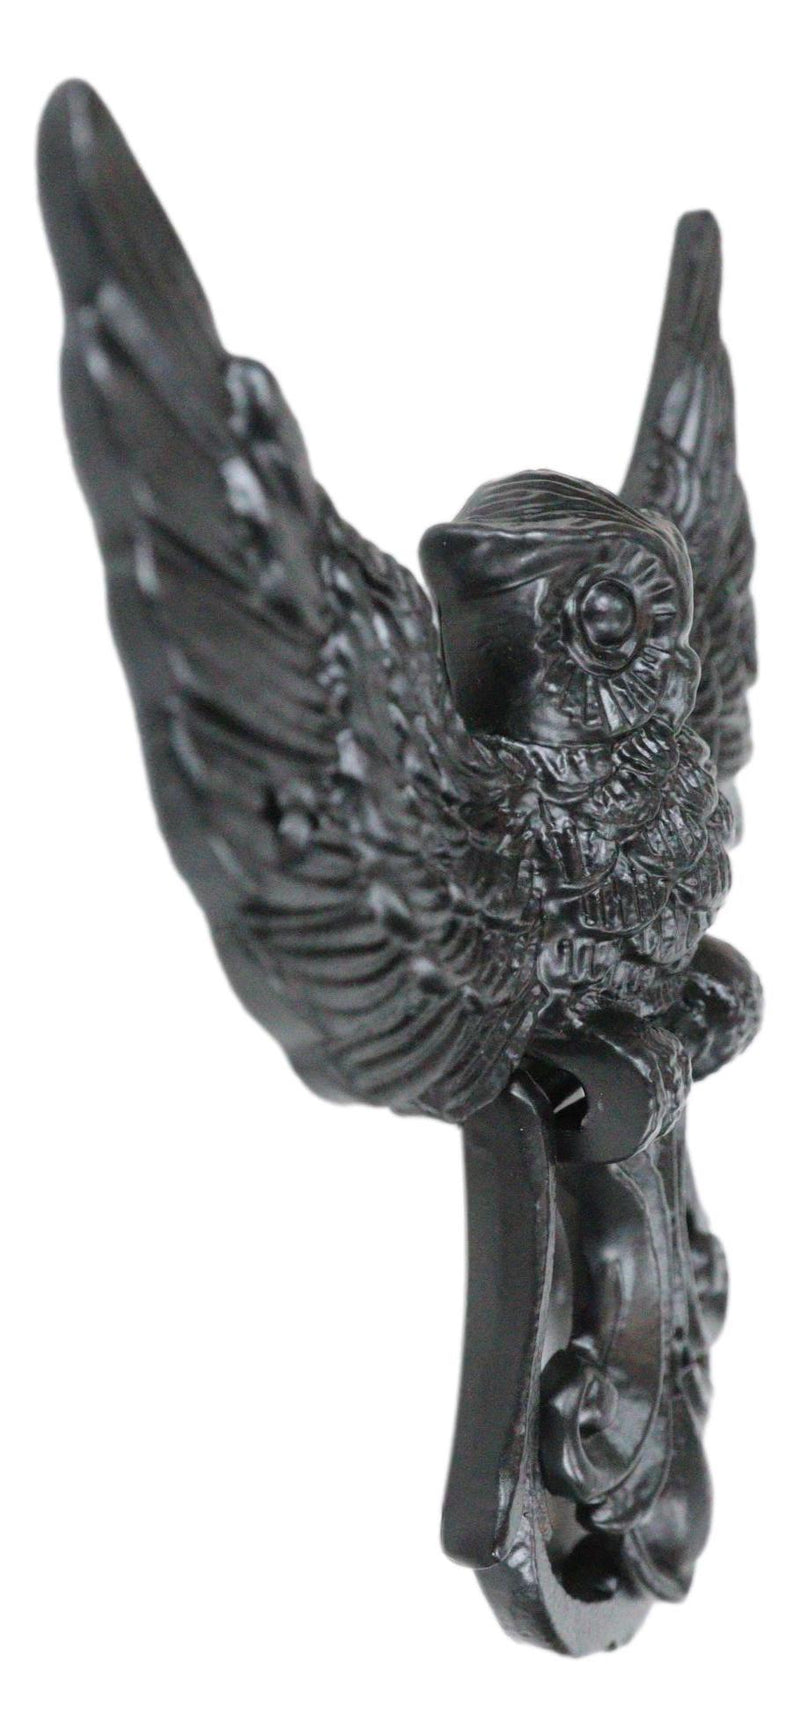 Metal Rustic Flying Wise Great Horned Owl Fleur De Lis Door Knocker Sculpture